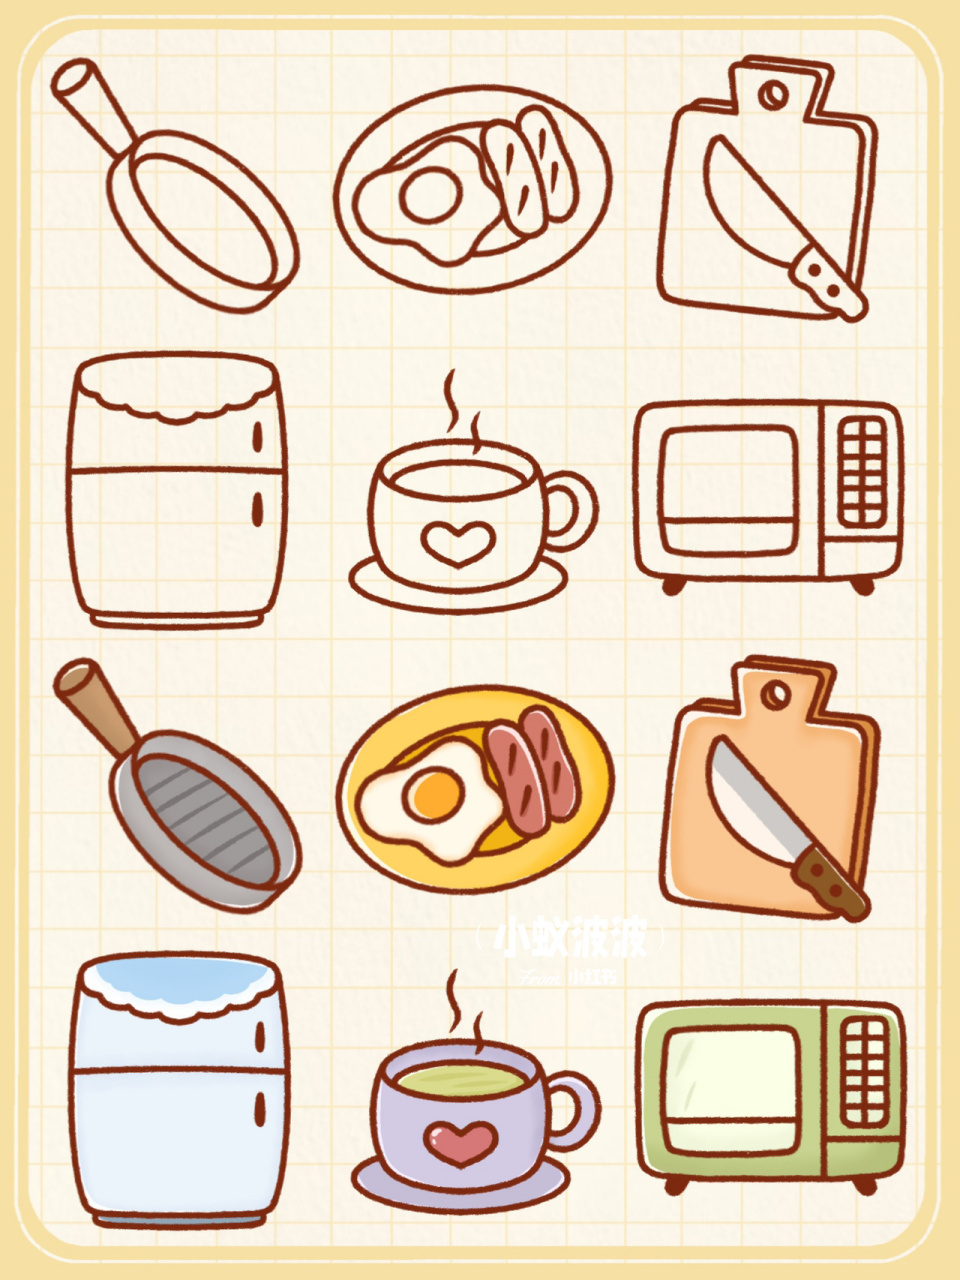 实用简笔画之93厨房用具 今天分享几个厨房常见物品的简笔画 平底锅